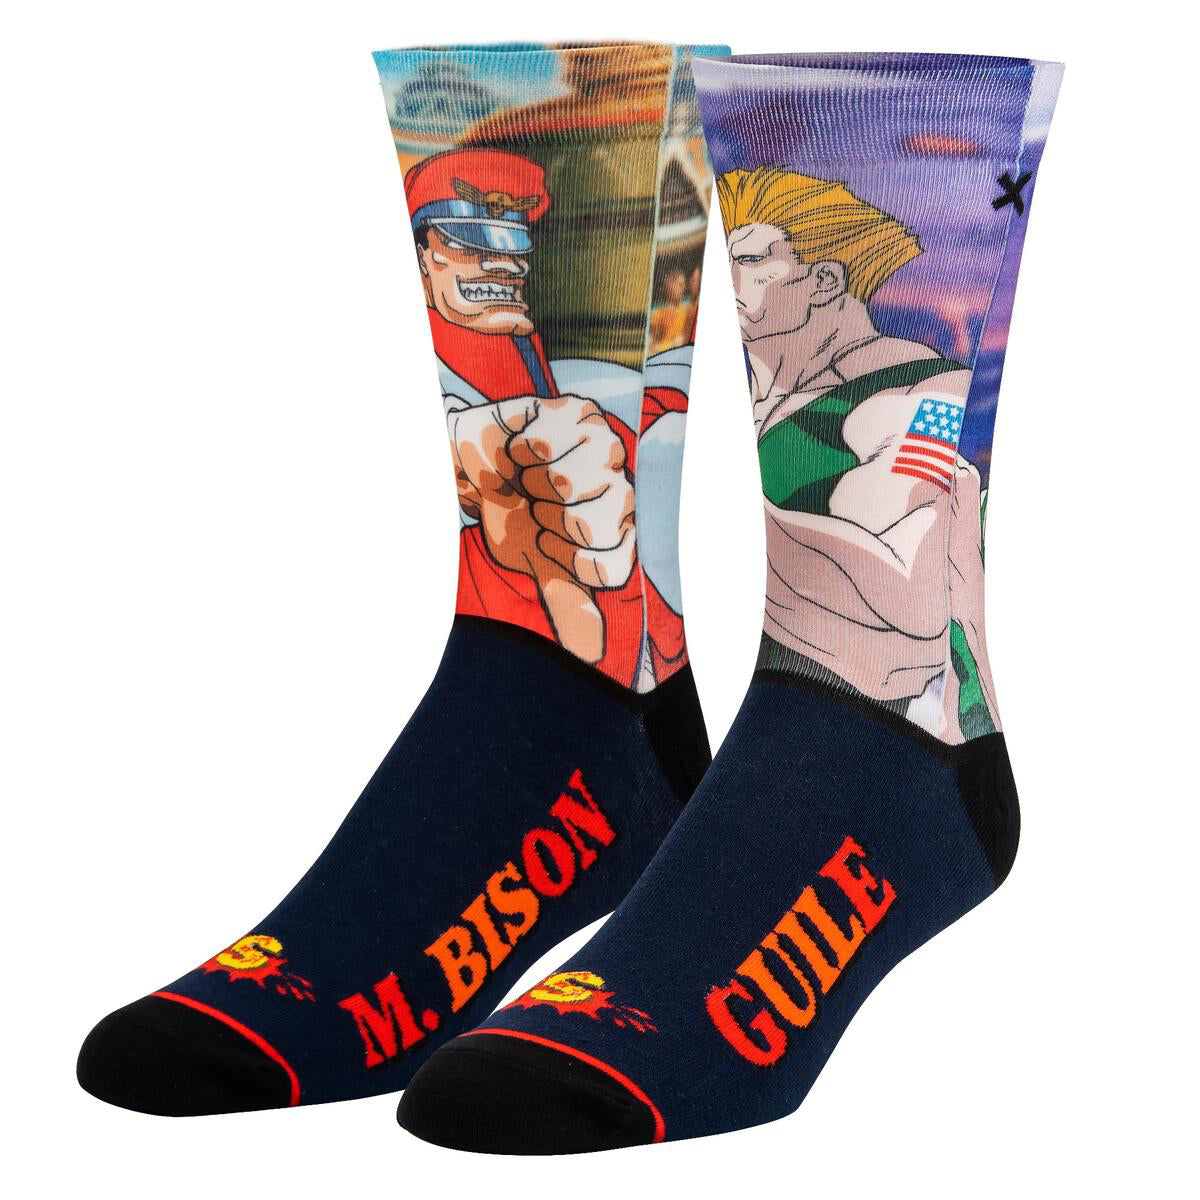 Odd Sox Men's Crew Socks – M Bison Vs Guile (Street Fighter II)